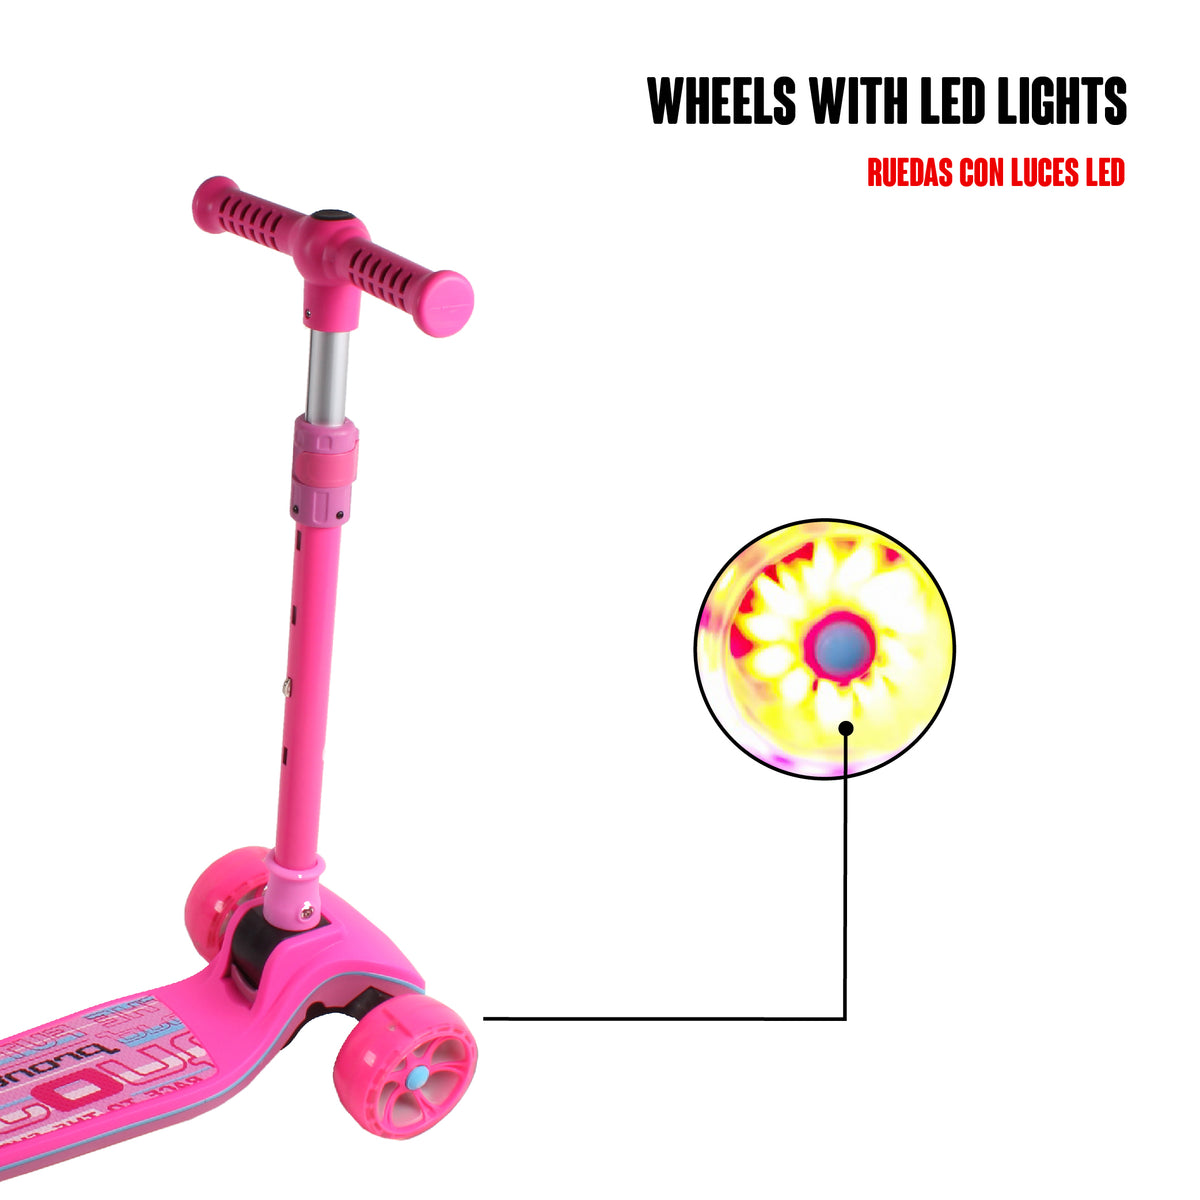 Patinete para niños - Patinetes deportivos plegables con ruedas grandes,  scooters plegables con manillar ajustable, freno trasero, diseño ligero